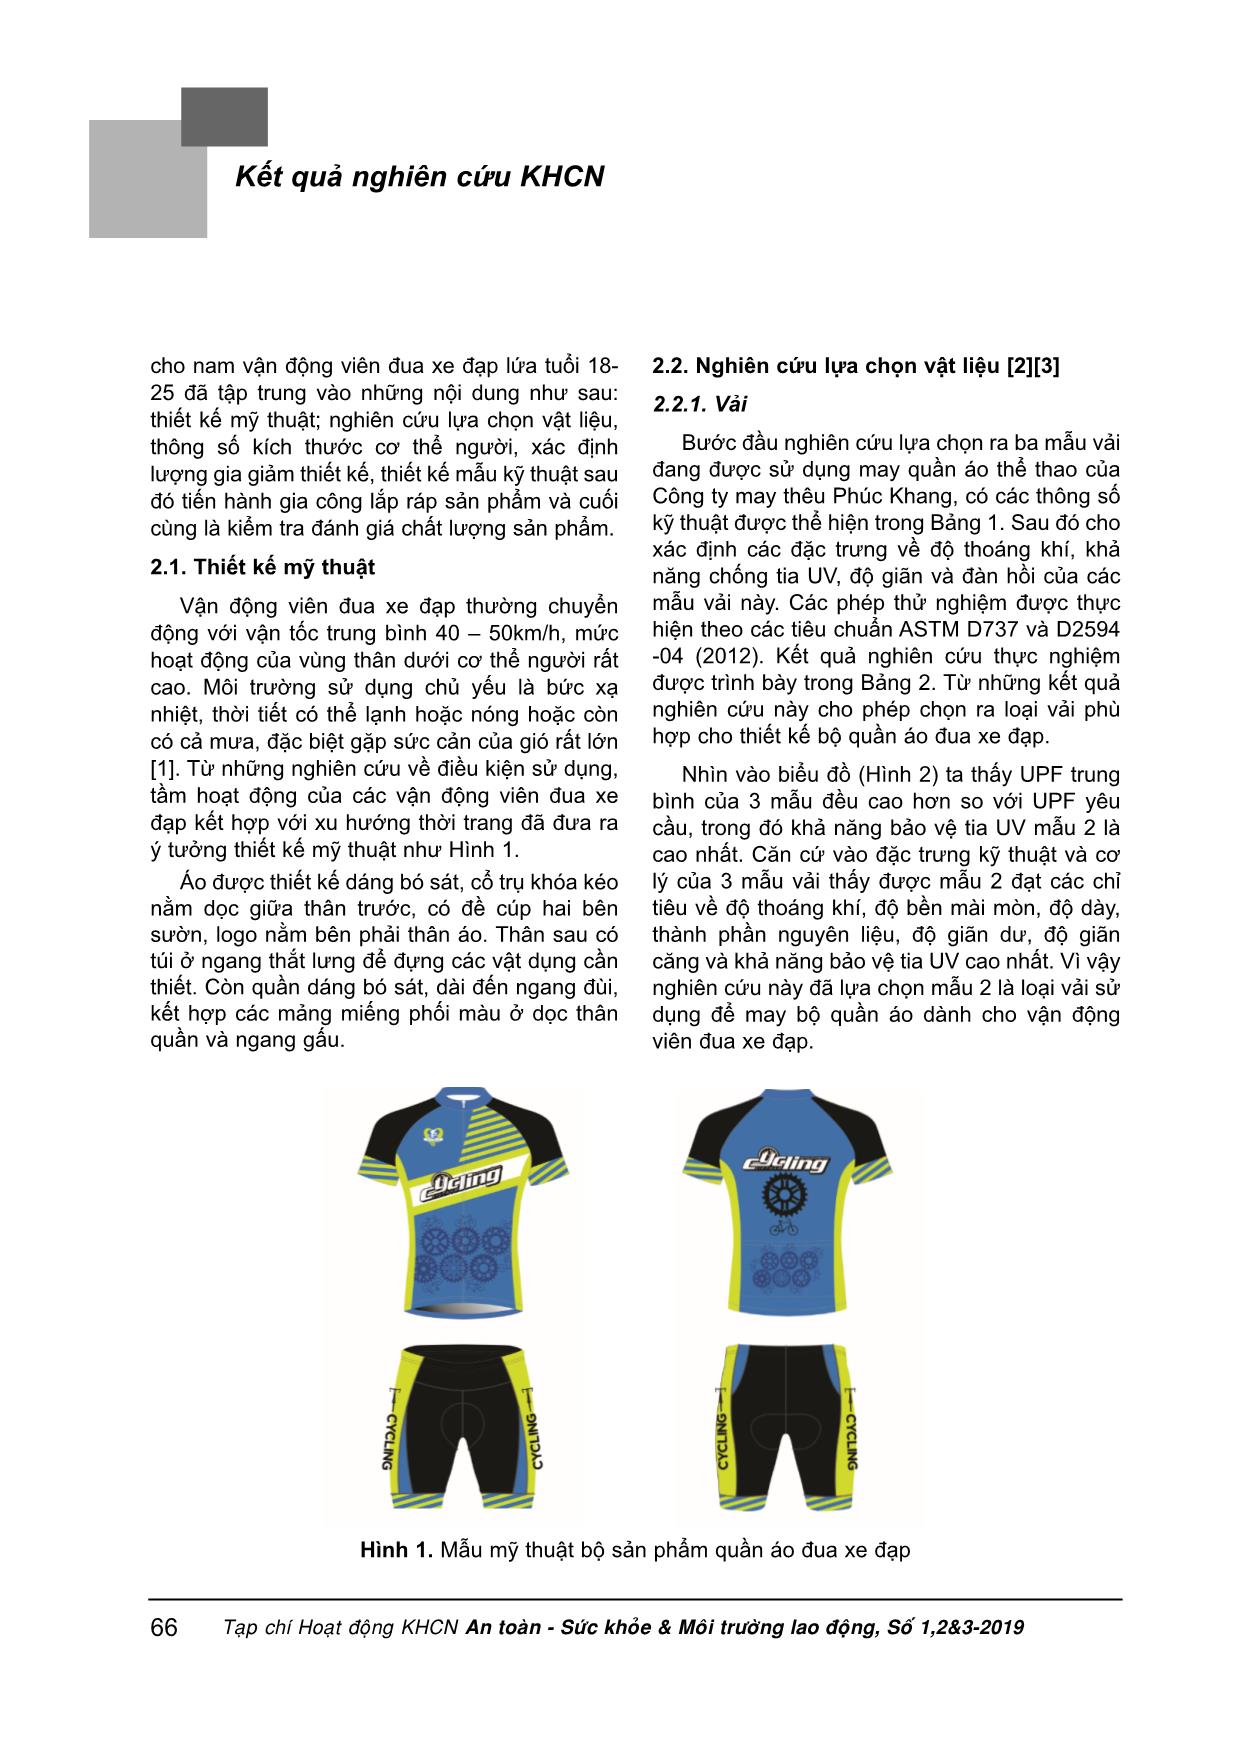 Nghiên cứu thiết kế quần áo cho nam vận động viên đua xe đạp lứa tuổi từ 18-25 trang 2